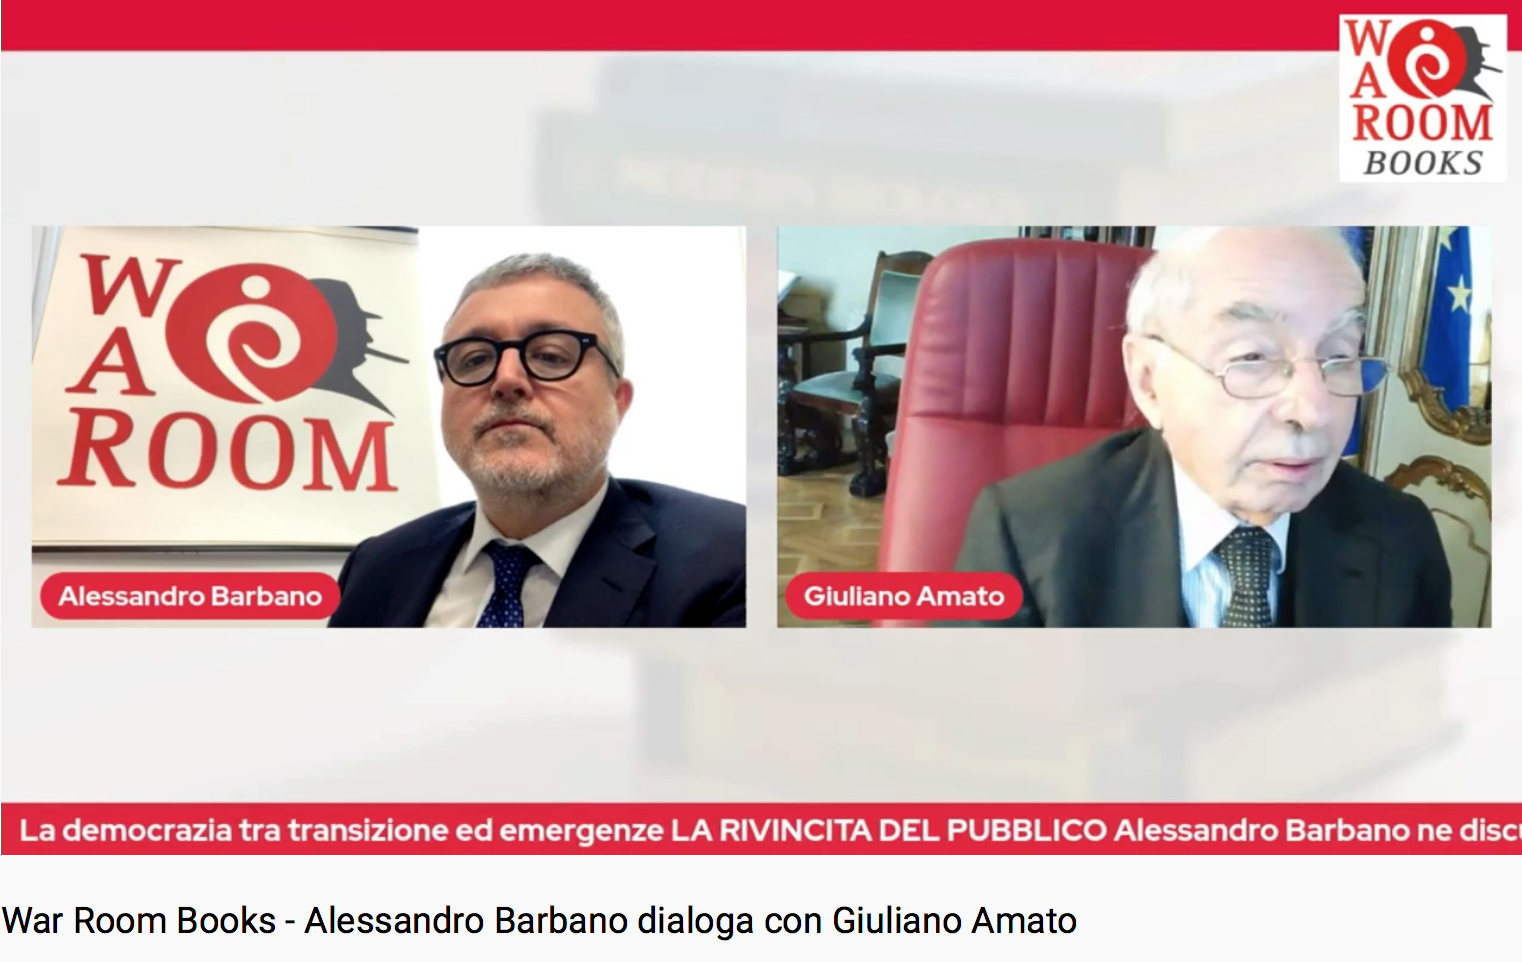 “La rivincita del pubblico”: Alessandro Barbano discute con Giuliano Amato